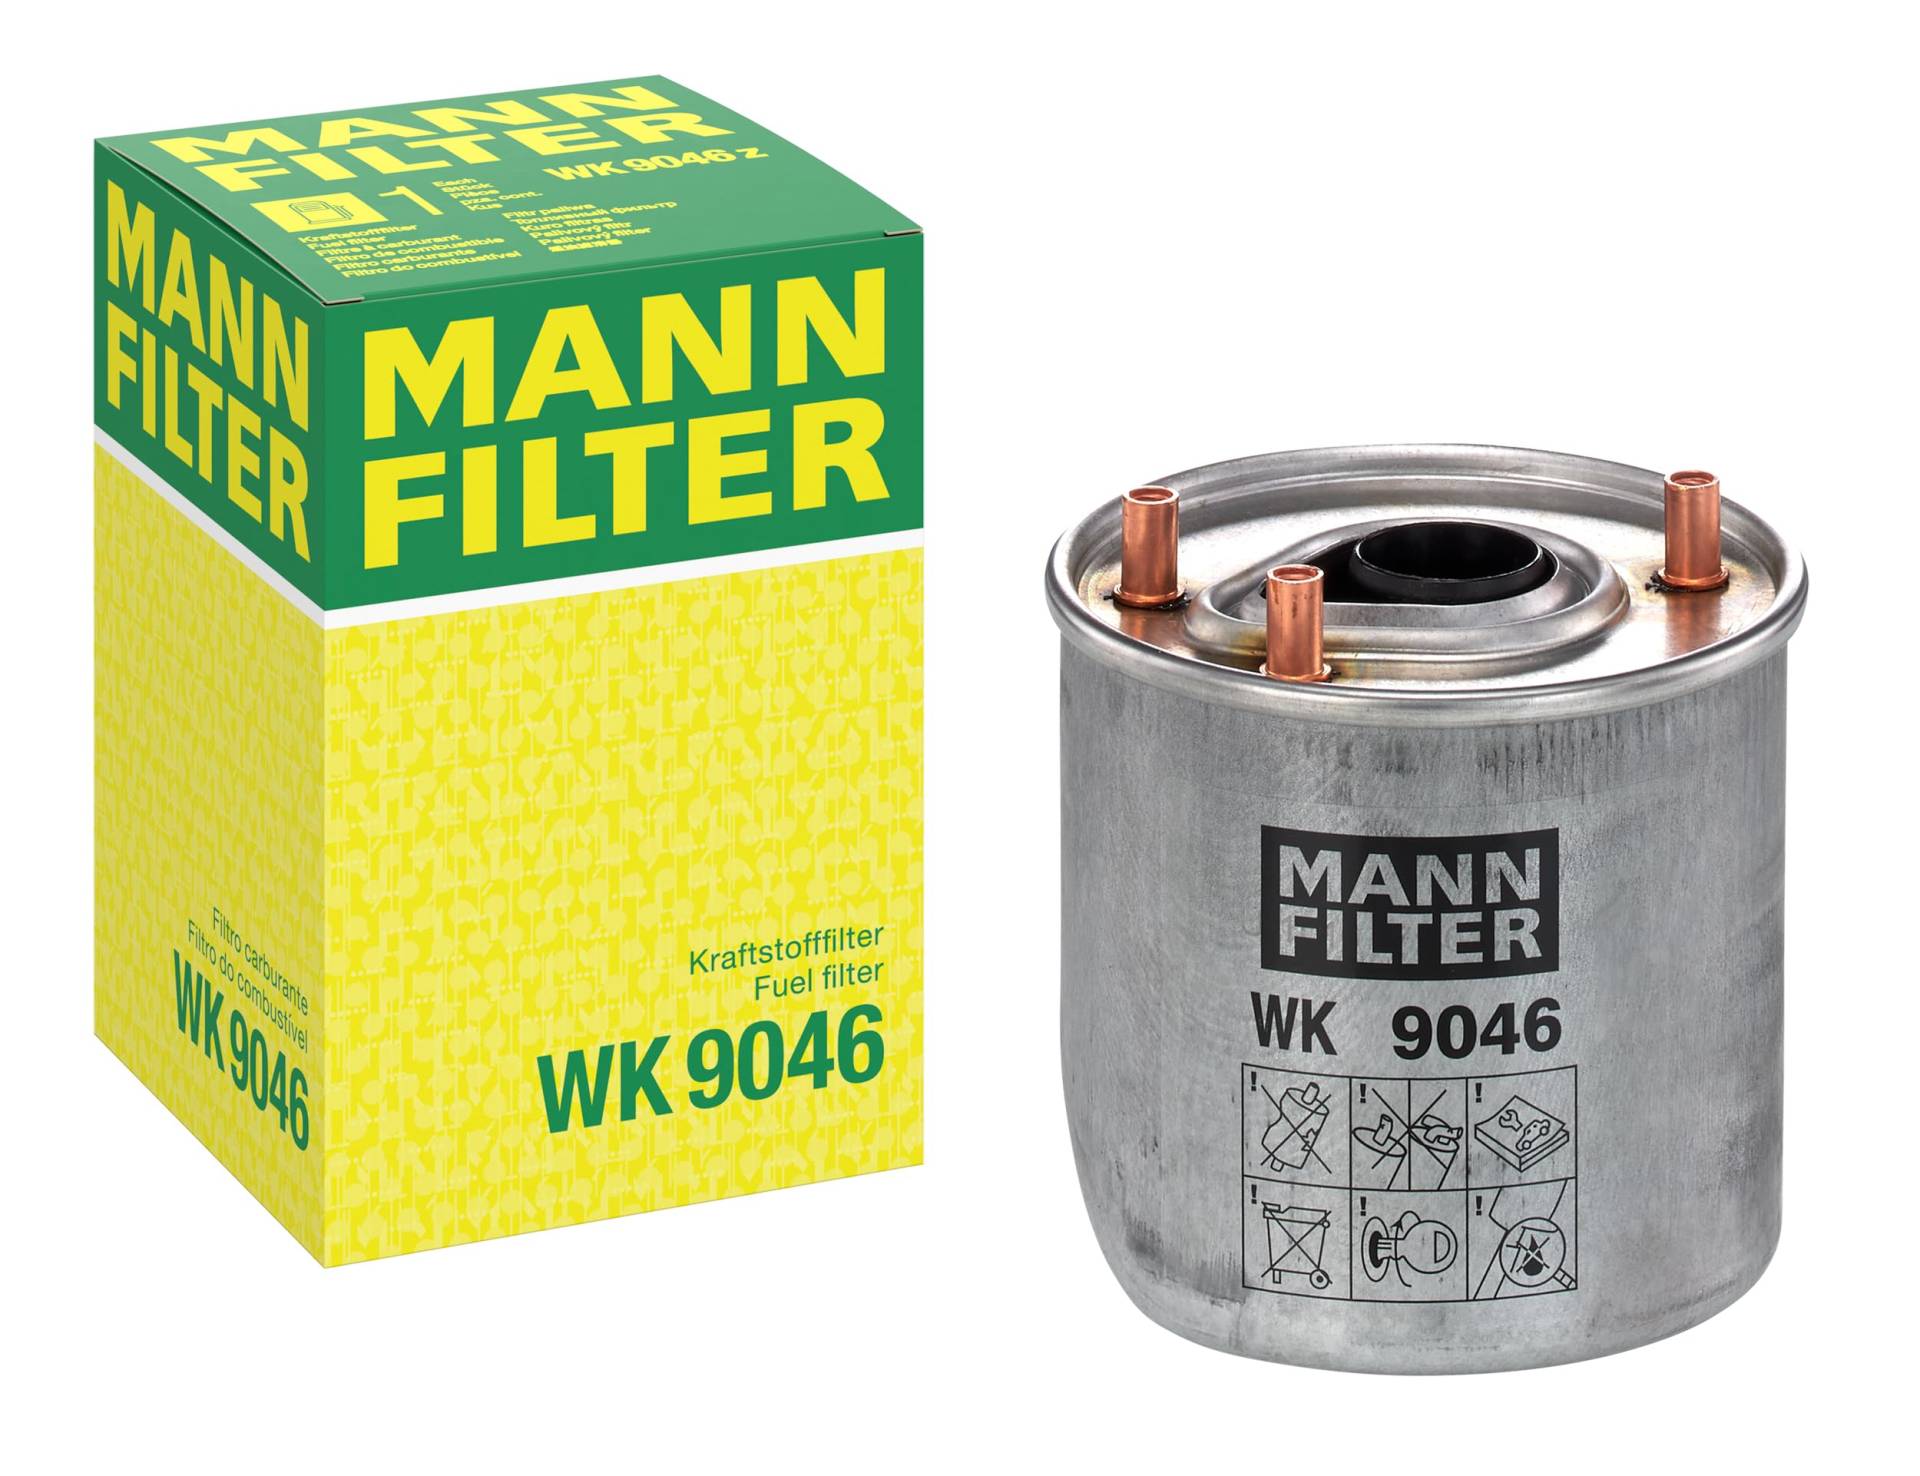 MANN-FILTER WK 9046 Kraftstofffilter – Für PKW von MANN-FILTER